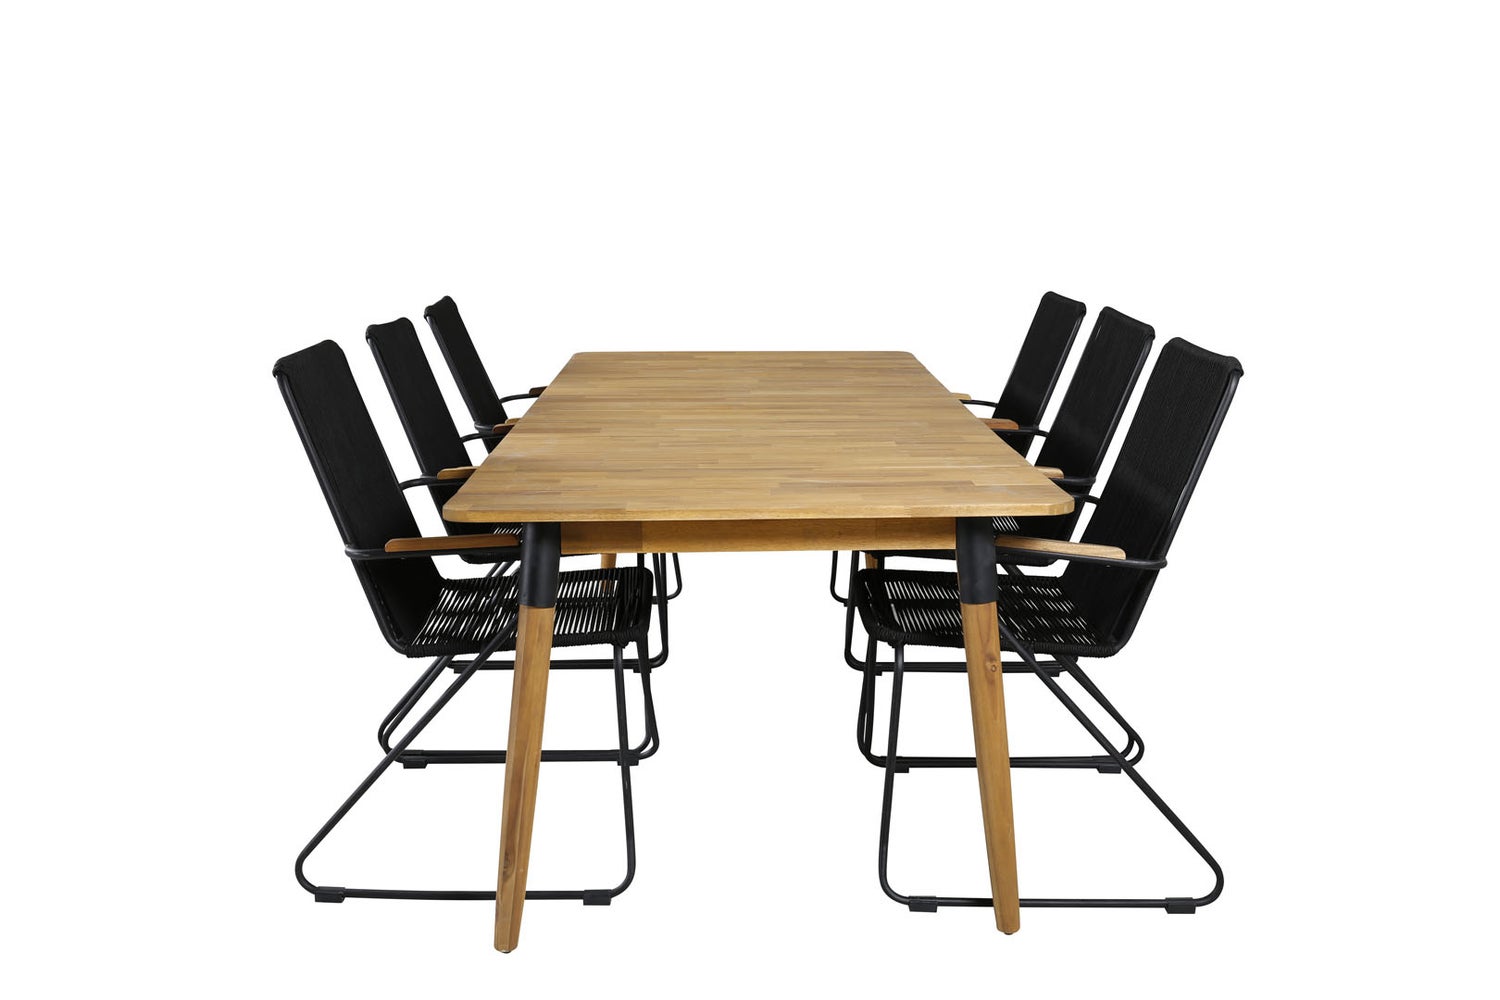 Julian Gartenset Tisch 100x210cm und 6 Stühle Armlehne Bois schwarz, natur.